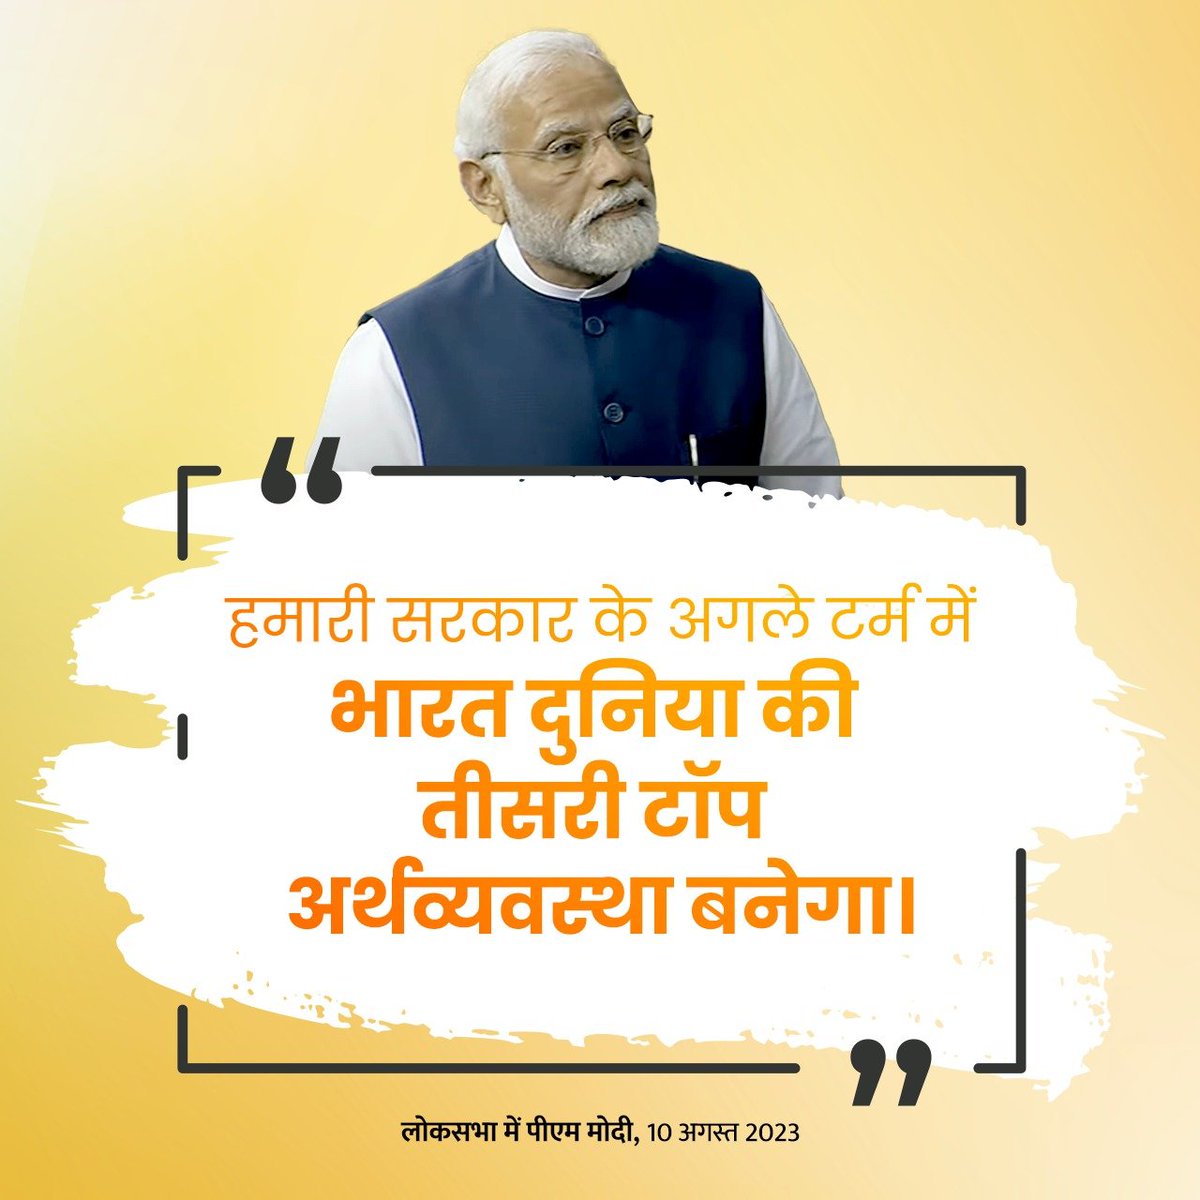 हमारी सरकार के अगले टर्म में भारत दुनिया की तीसरी टॉप अर्थव्यवस्था बनेगा । @narendramodi